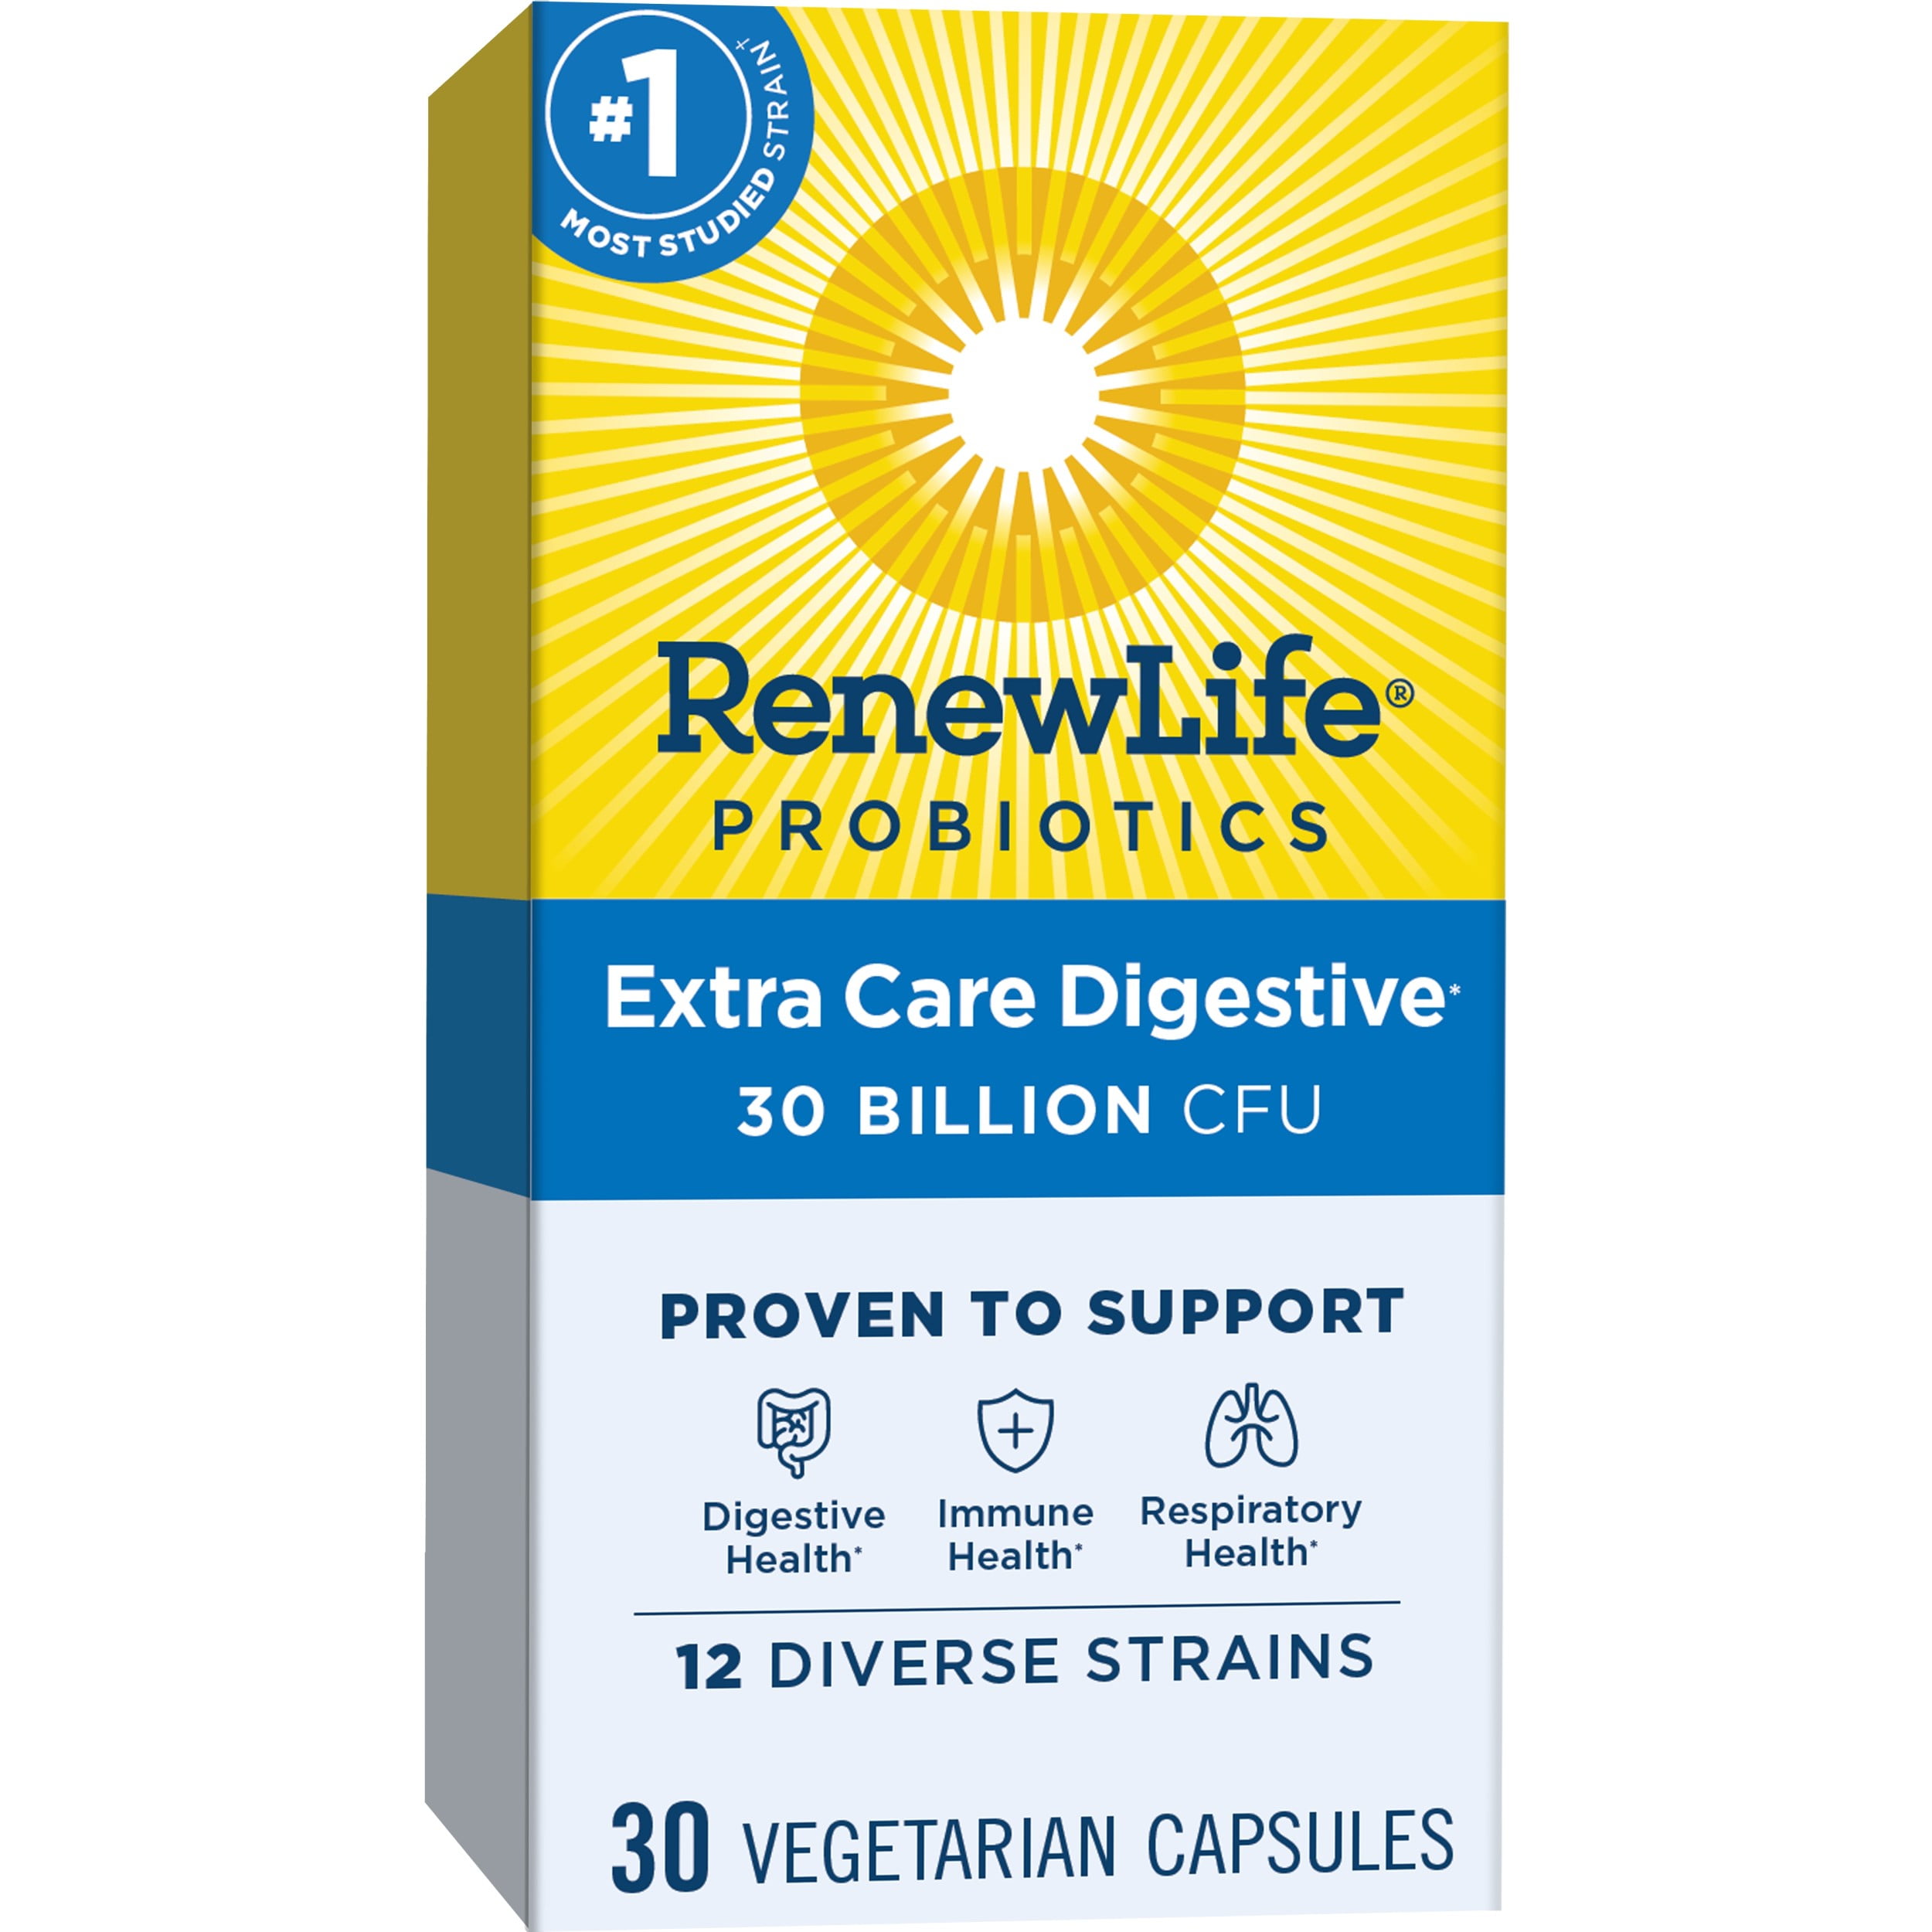 Renew Life Adult Extra Care Digestive* Probiotic, 30 Billion CFU Per Capsule, 30 Capsules